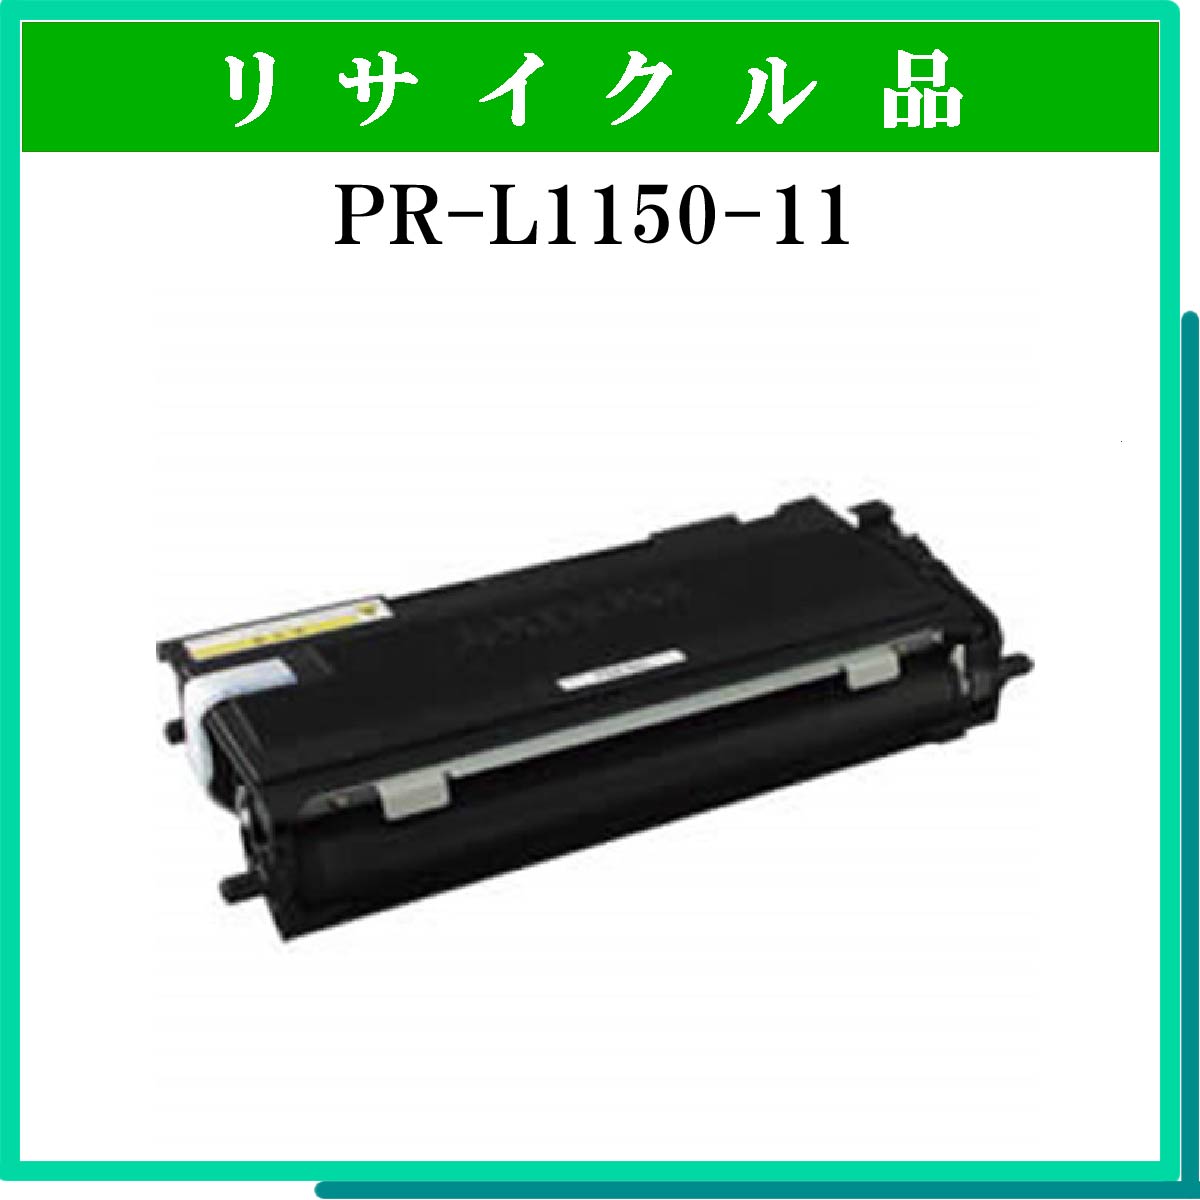 PR-L1150-11